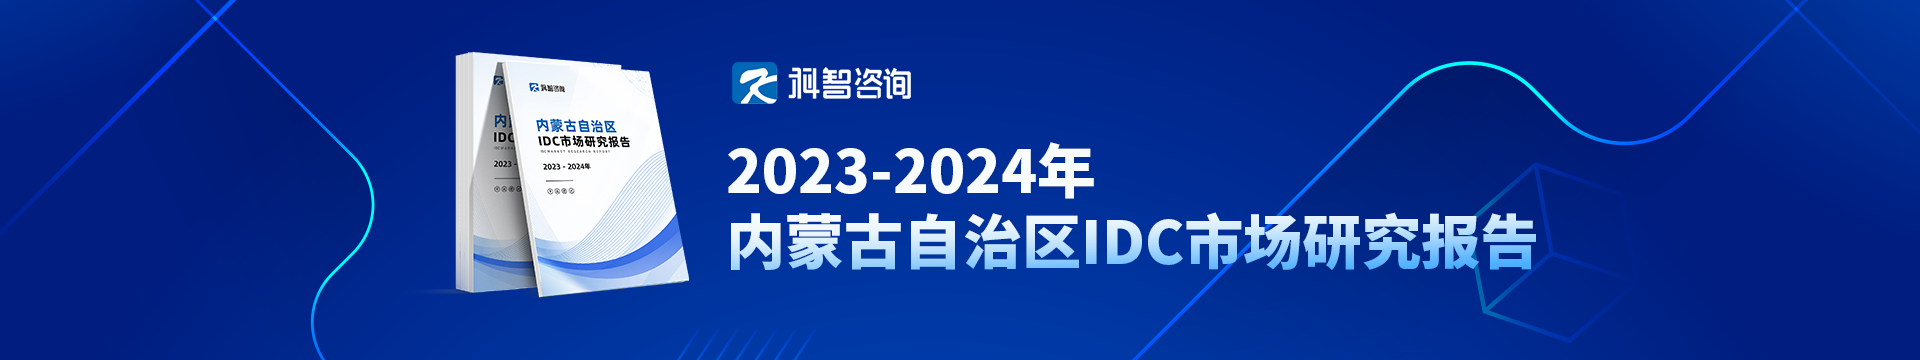 2023-2024年内蒙古自治区IDC市场研究报告